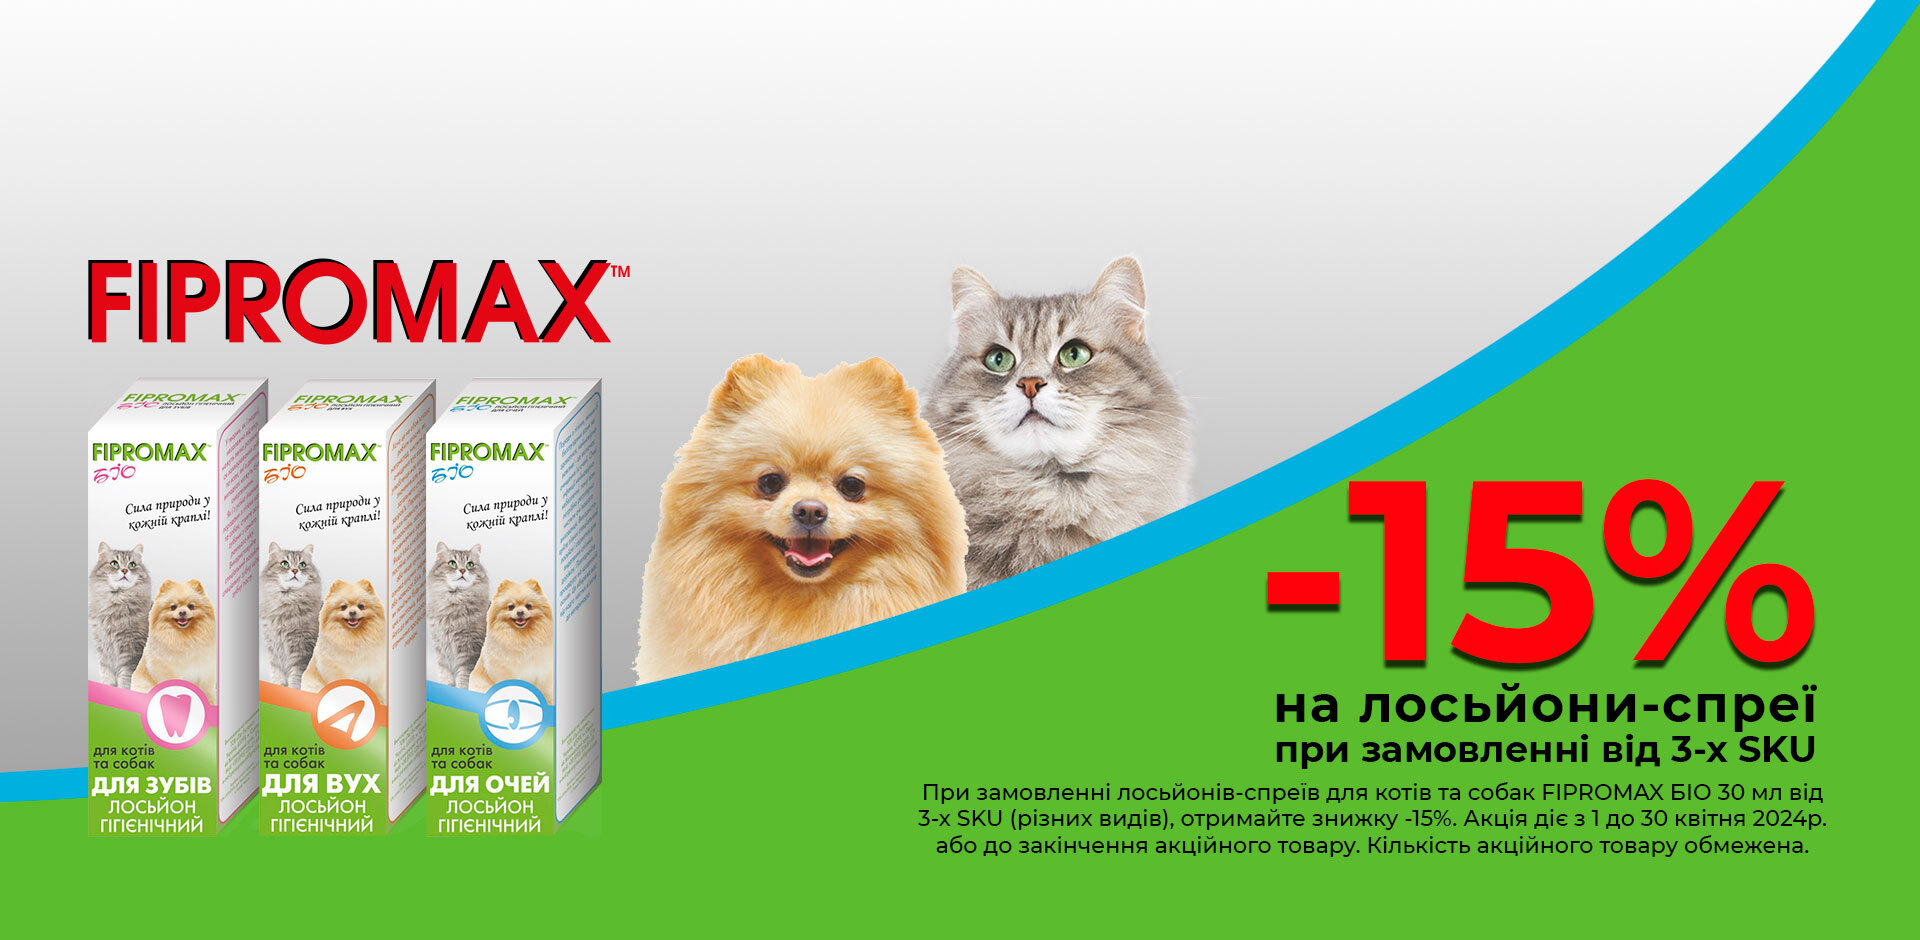 АКЦІЯ на FIPROMAX БІО лосьйон-спрей для котів: при замовленні 3 SKU (різних видів) ЗНИЖКА 15%